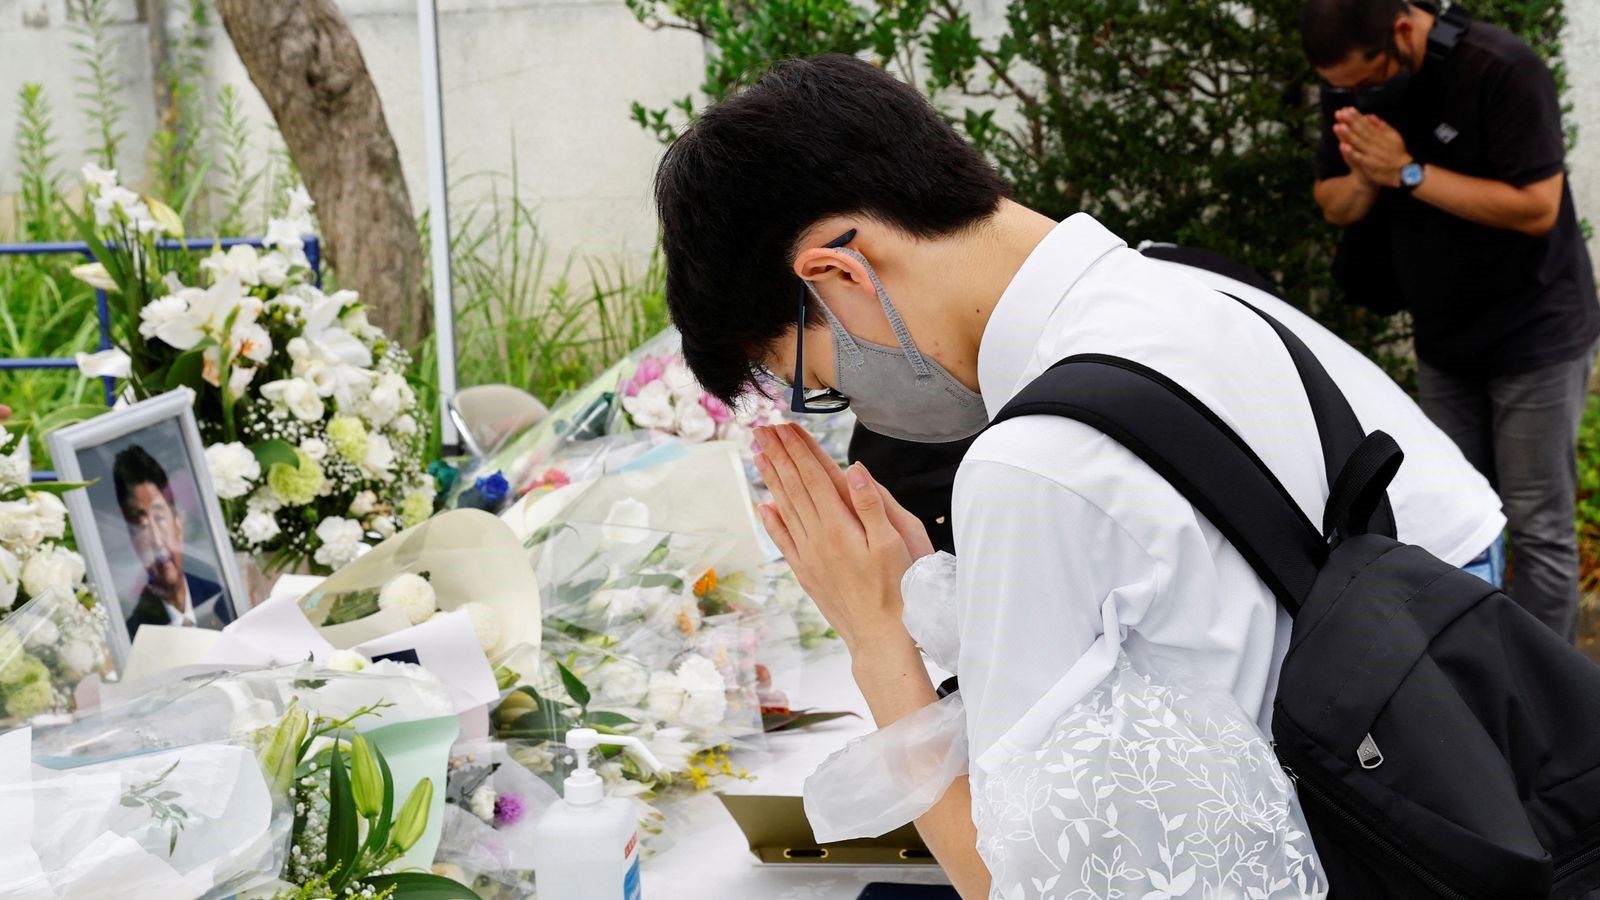 Người dân Nhật Bản đưa tiễn cố Thủ tướng Abe về nơi an nghỉ cuối cùng - ảnh 5